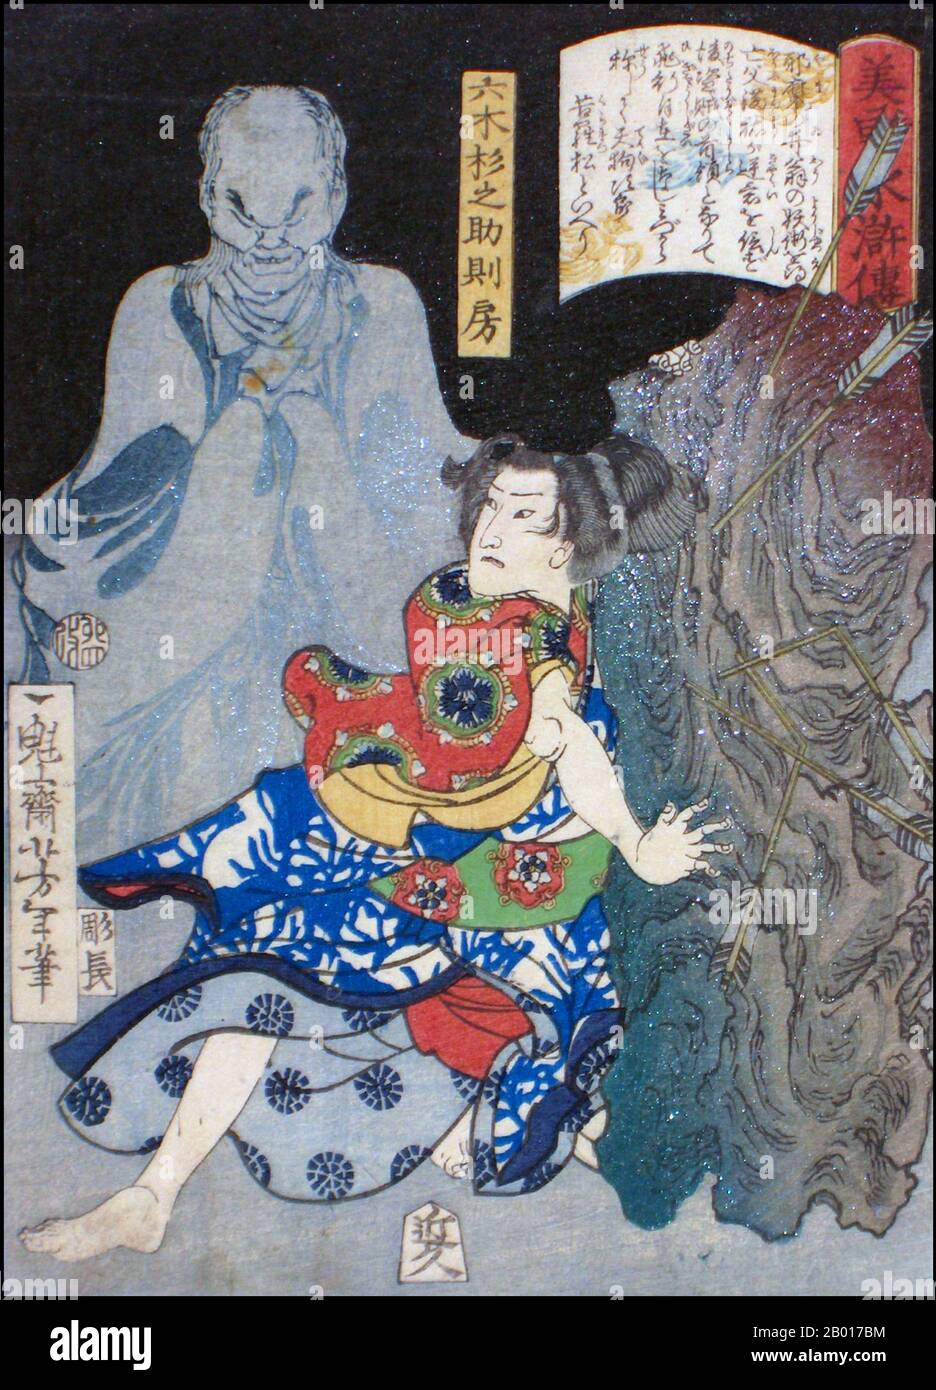 Japon: 'Mutsuki Suginosuke Norifusa with a Ghost'.Imprimé Ukiyo-e de la série 'Heroes of the Water Margin' de Tsukioka Yoshitoshi (1839 - 9 juin 1892), 1867.Tsukioka Yoshitoshi, également appelé Tiso Yoshitoshi, était un artiste japonais.Il est largement reconnu comme le dernier grand maître d'Ukiyo-e, un type d'impression de blocs de bois japonais.Il est également considéré comme l'un des plus grands innovateurs de la forme.Sa carrière s'est étendue à deux époques : les dernières années du Japon féodal et les premières années du Japon moderne après la restauration de Meiji. Banque D'Images